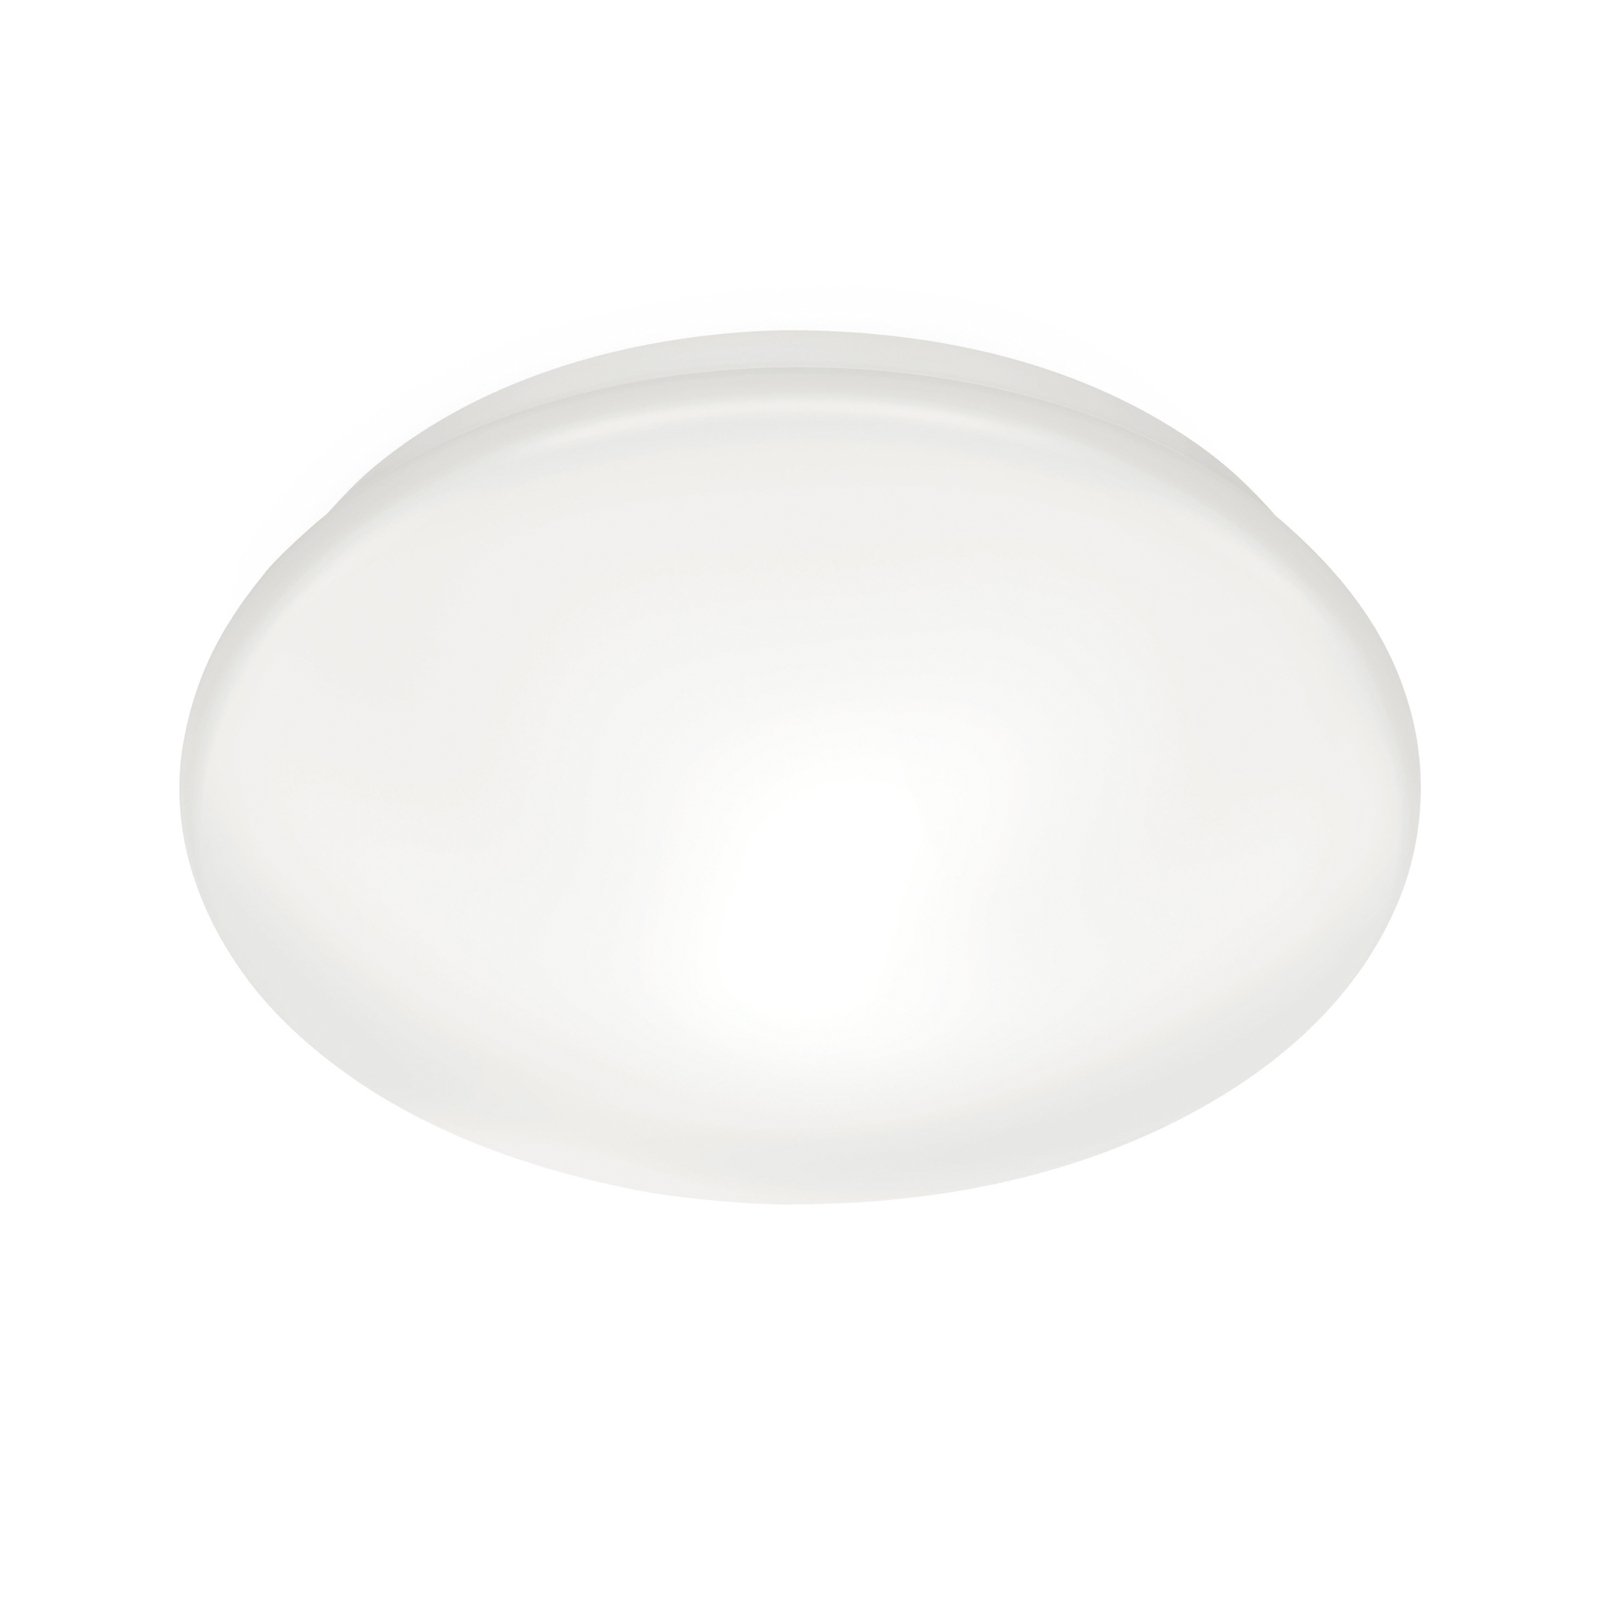 WiZ Adria plafoniera LED, 17 W, bianco caldo